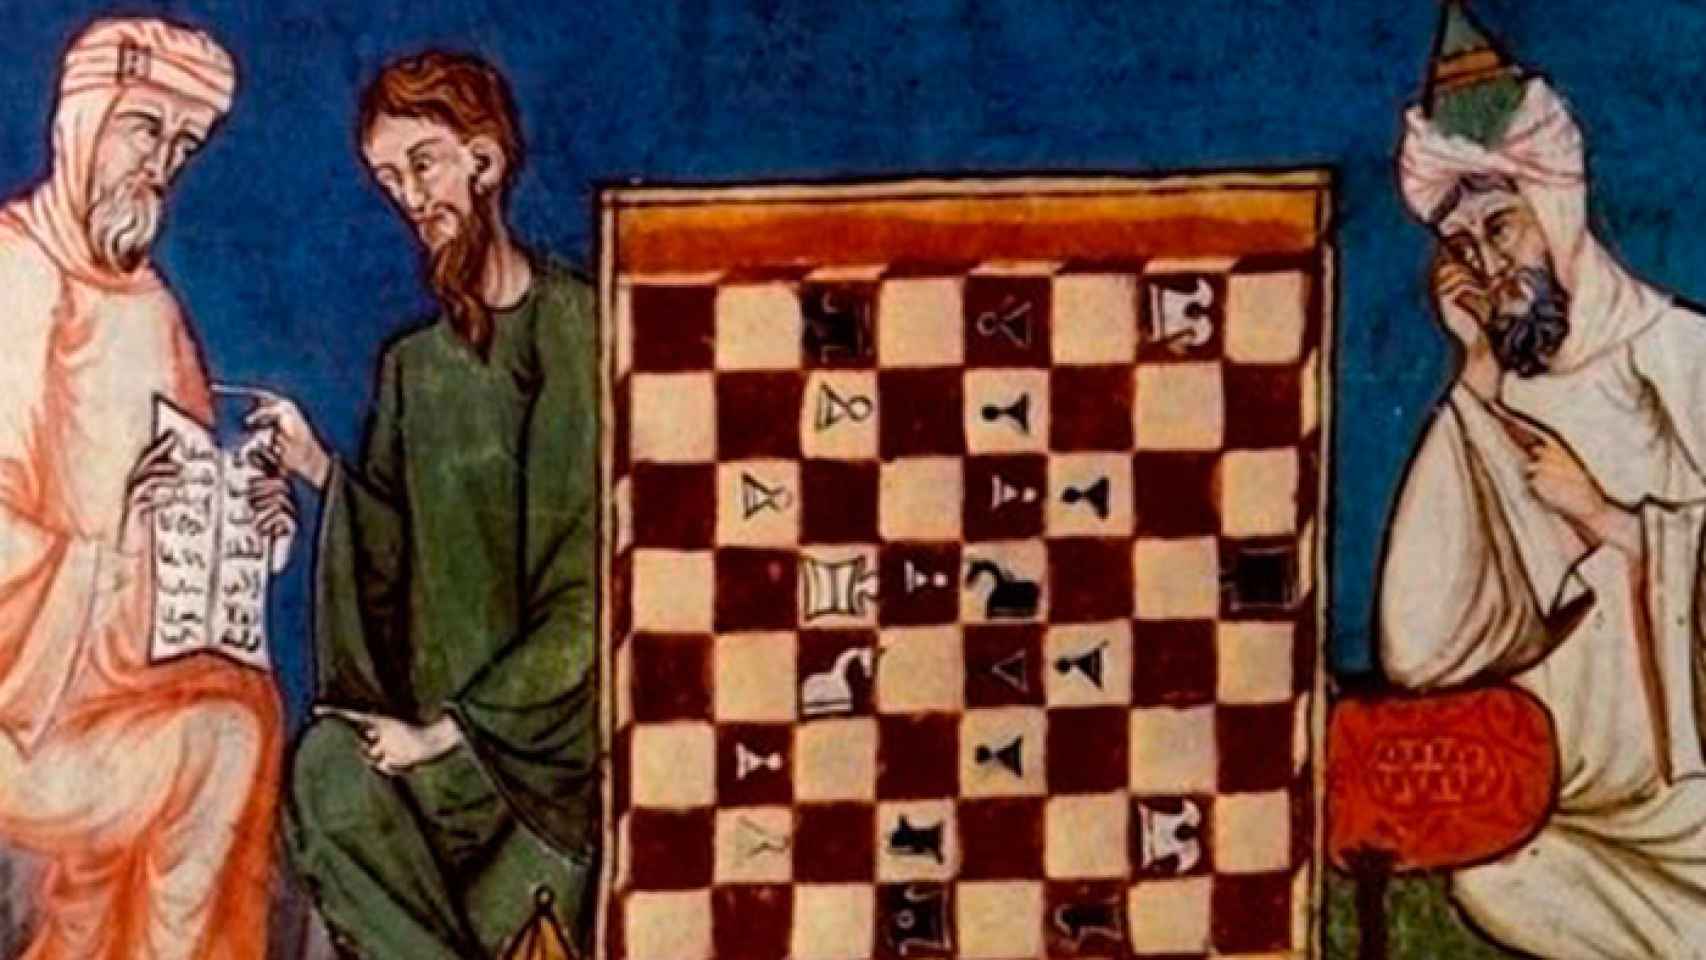 Composición pictórica de los primeros maestros árabes de ajedrez, donde uno de ellos juega de espaldas.